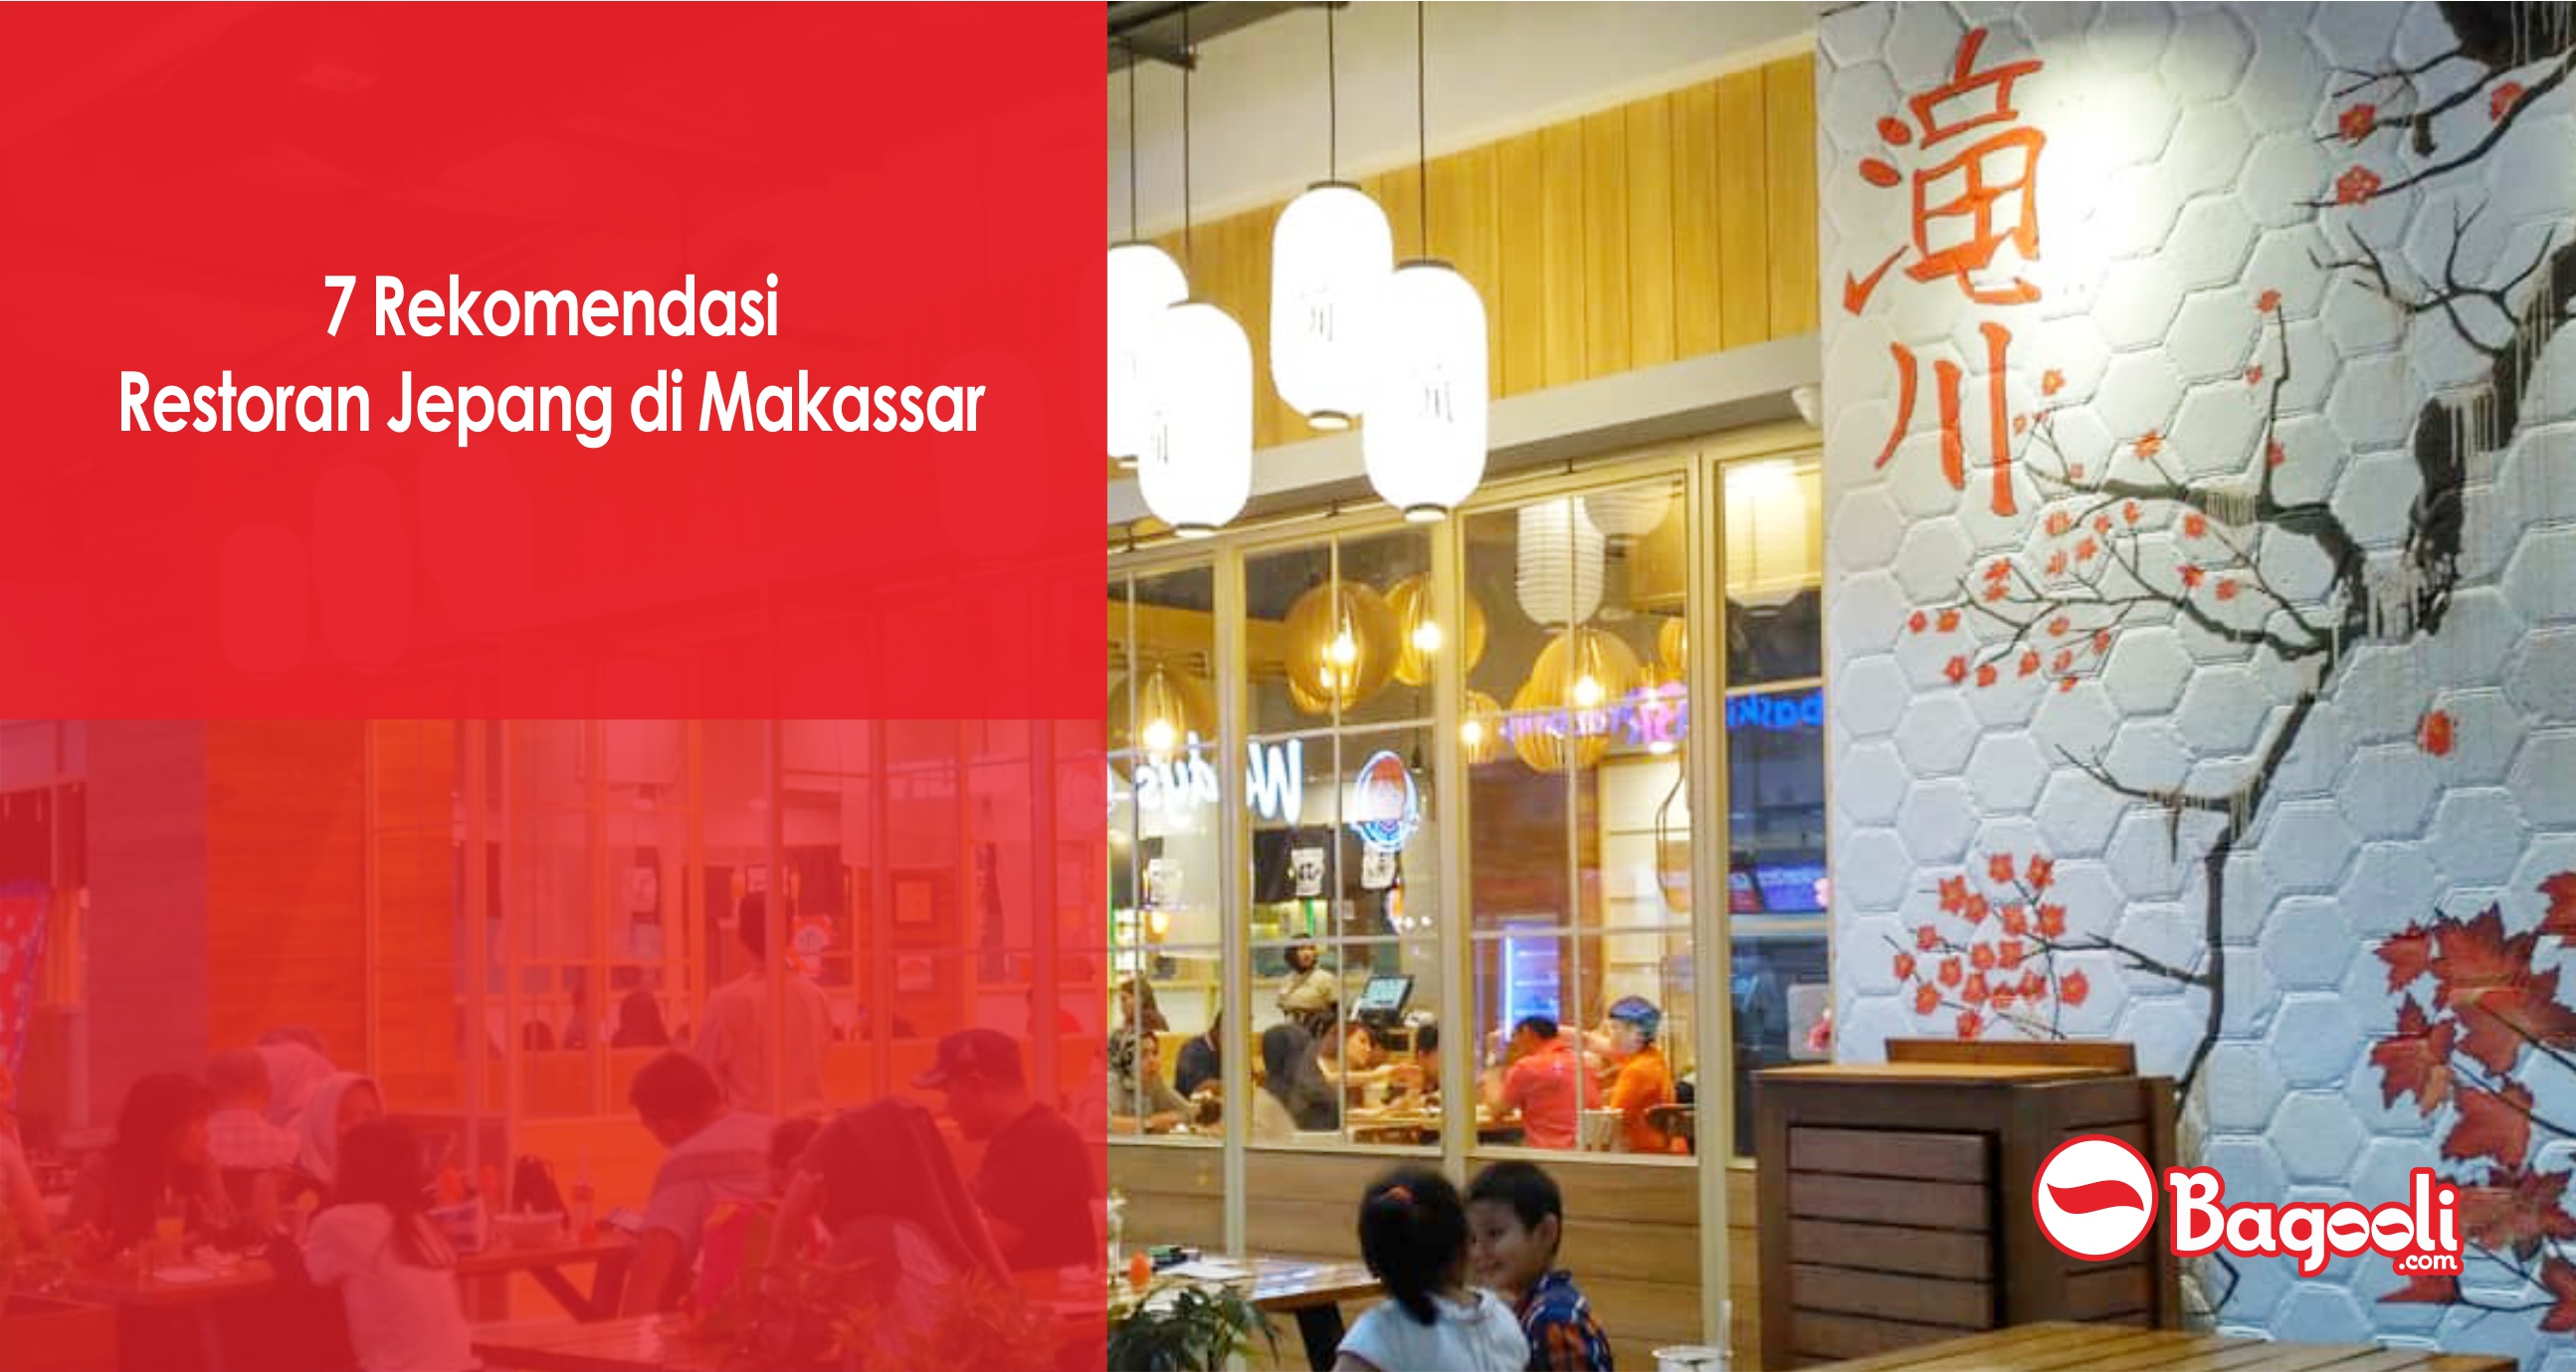 7 Rekomendasi Restoran Jepang di Makassar